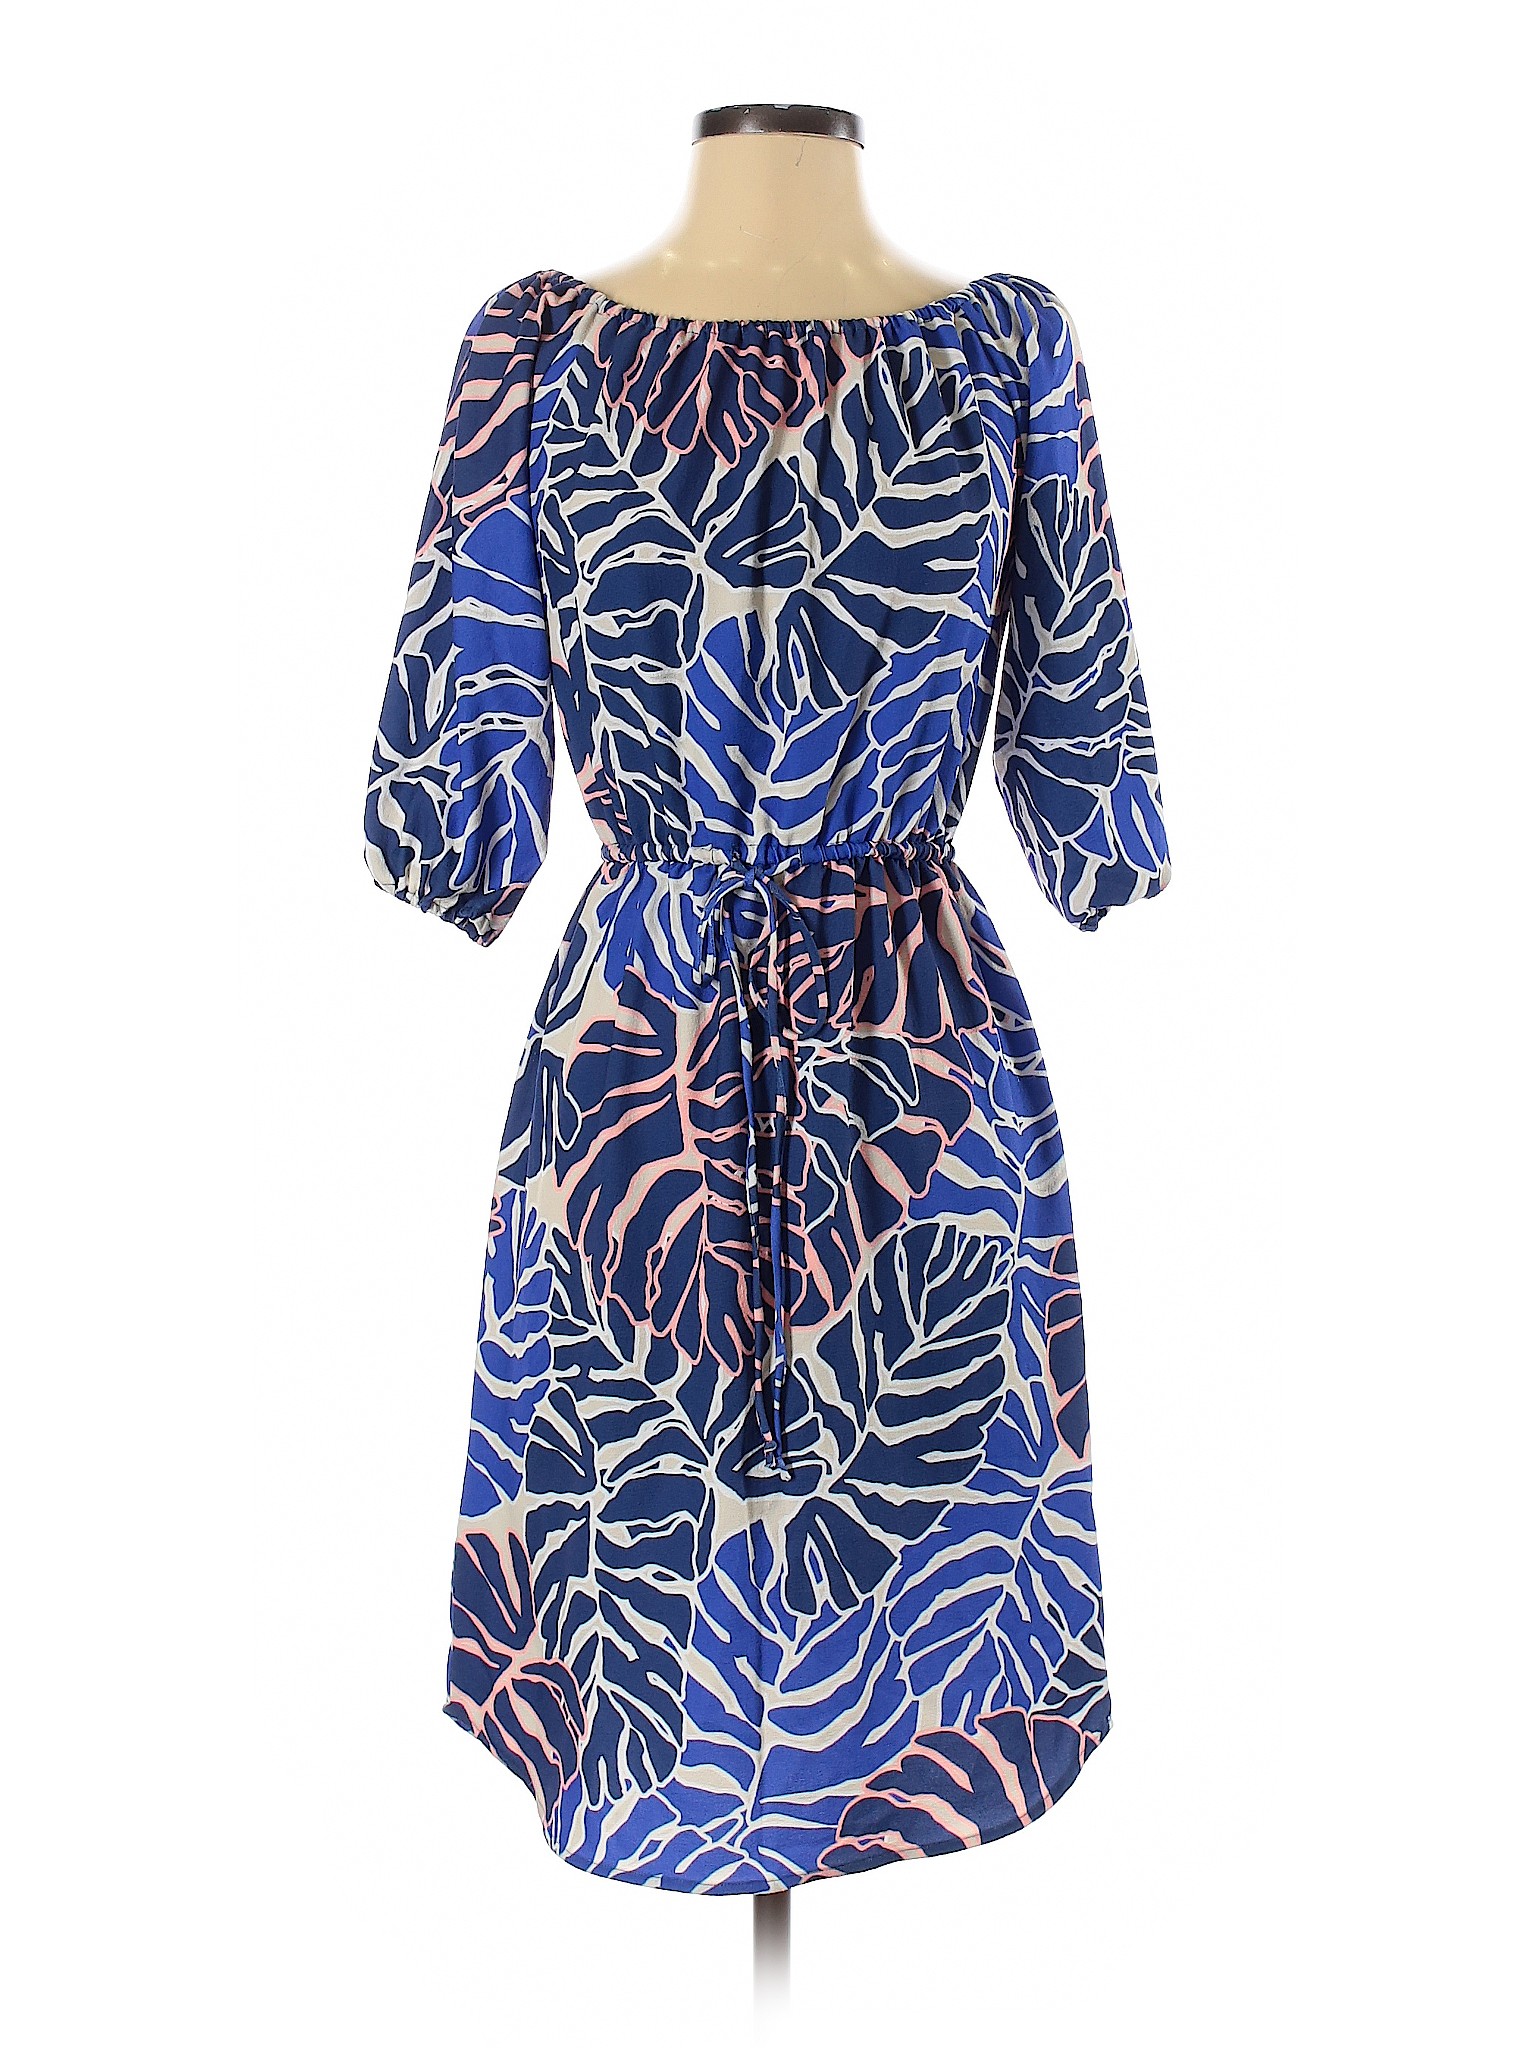 FELICITY & COCO Women Blue Casual Dress XS | eBay